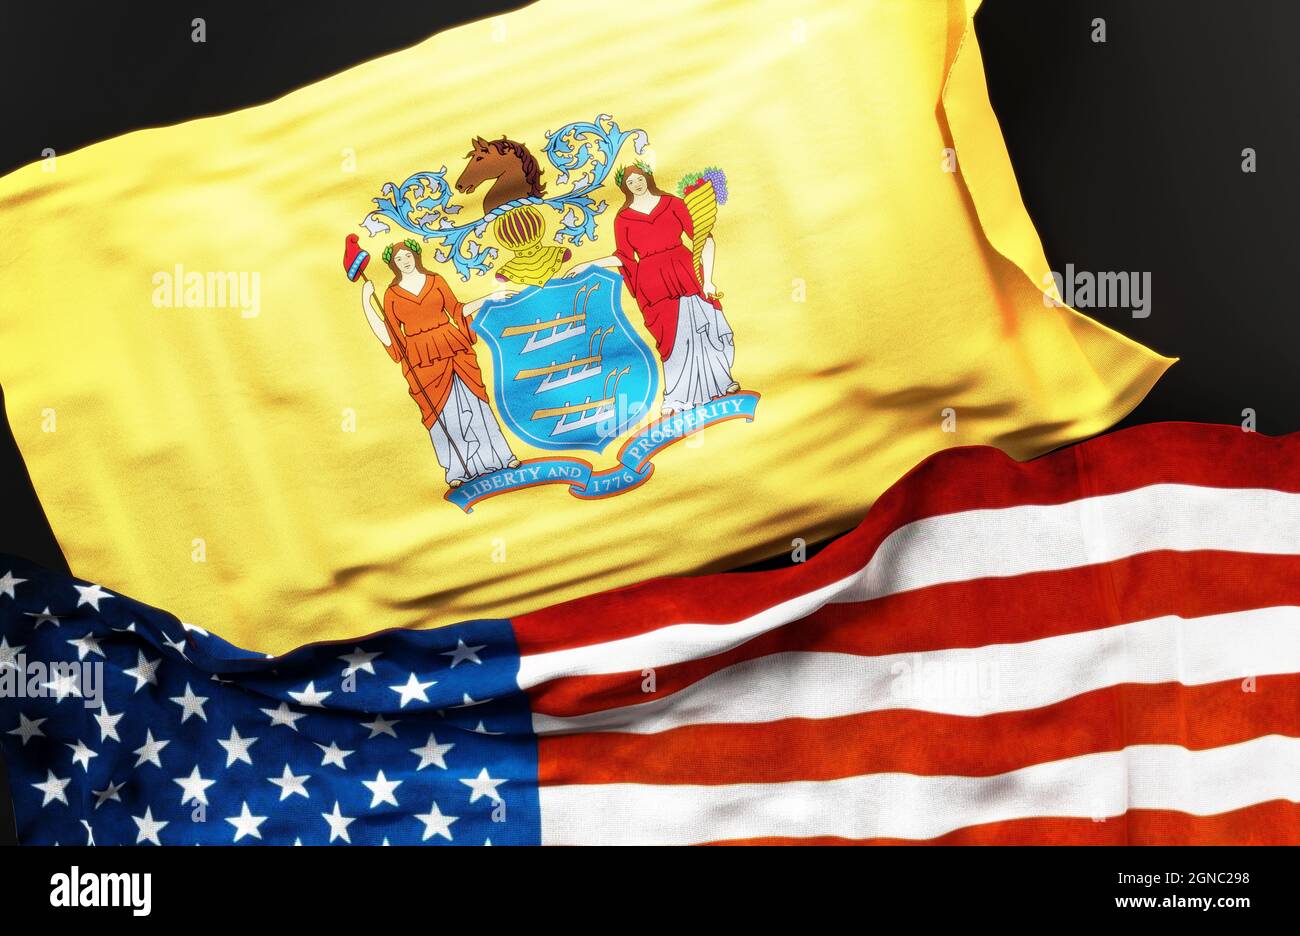 Bandiera del New Jersey insieme ad una bandiera degli Stati Uniti d'America come simbolo di unità tra loro, illustrazione 3d Foto Stock